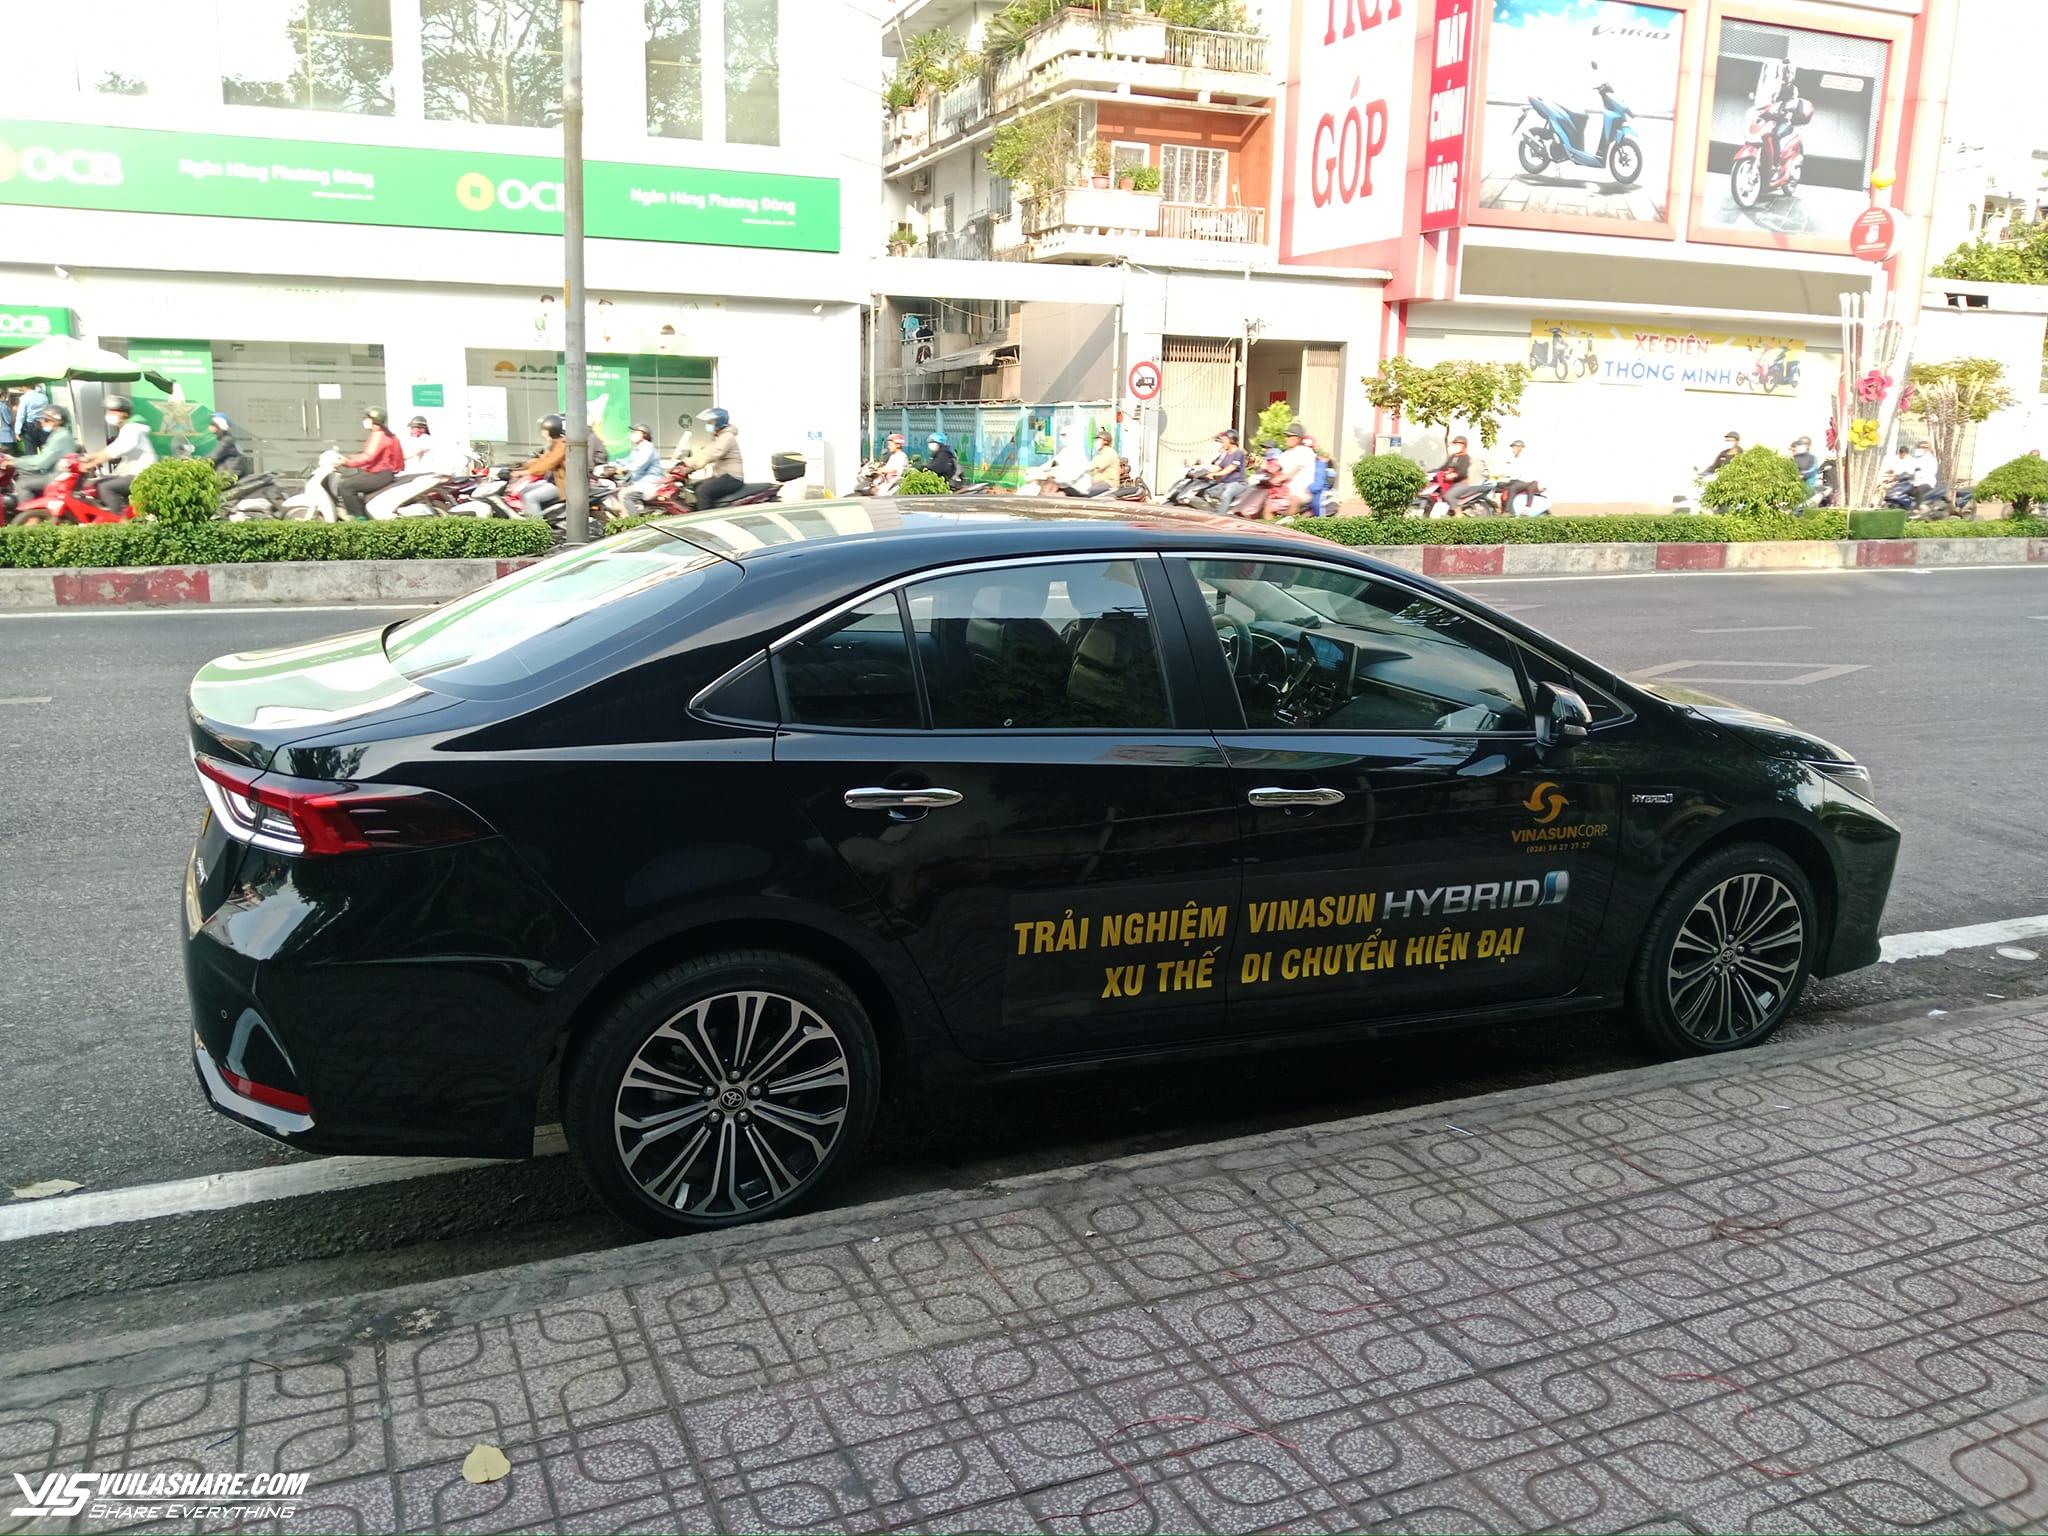 Taxi truyền thống dùng xe hybrid cạnh tranh Xanh SM- Ảnh 2.